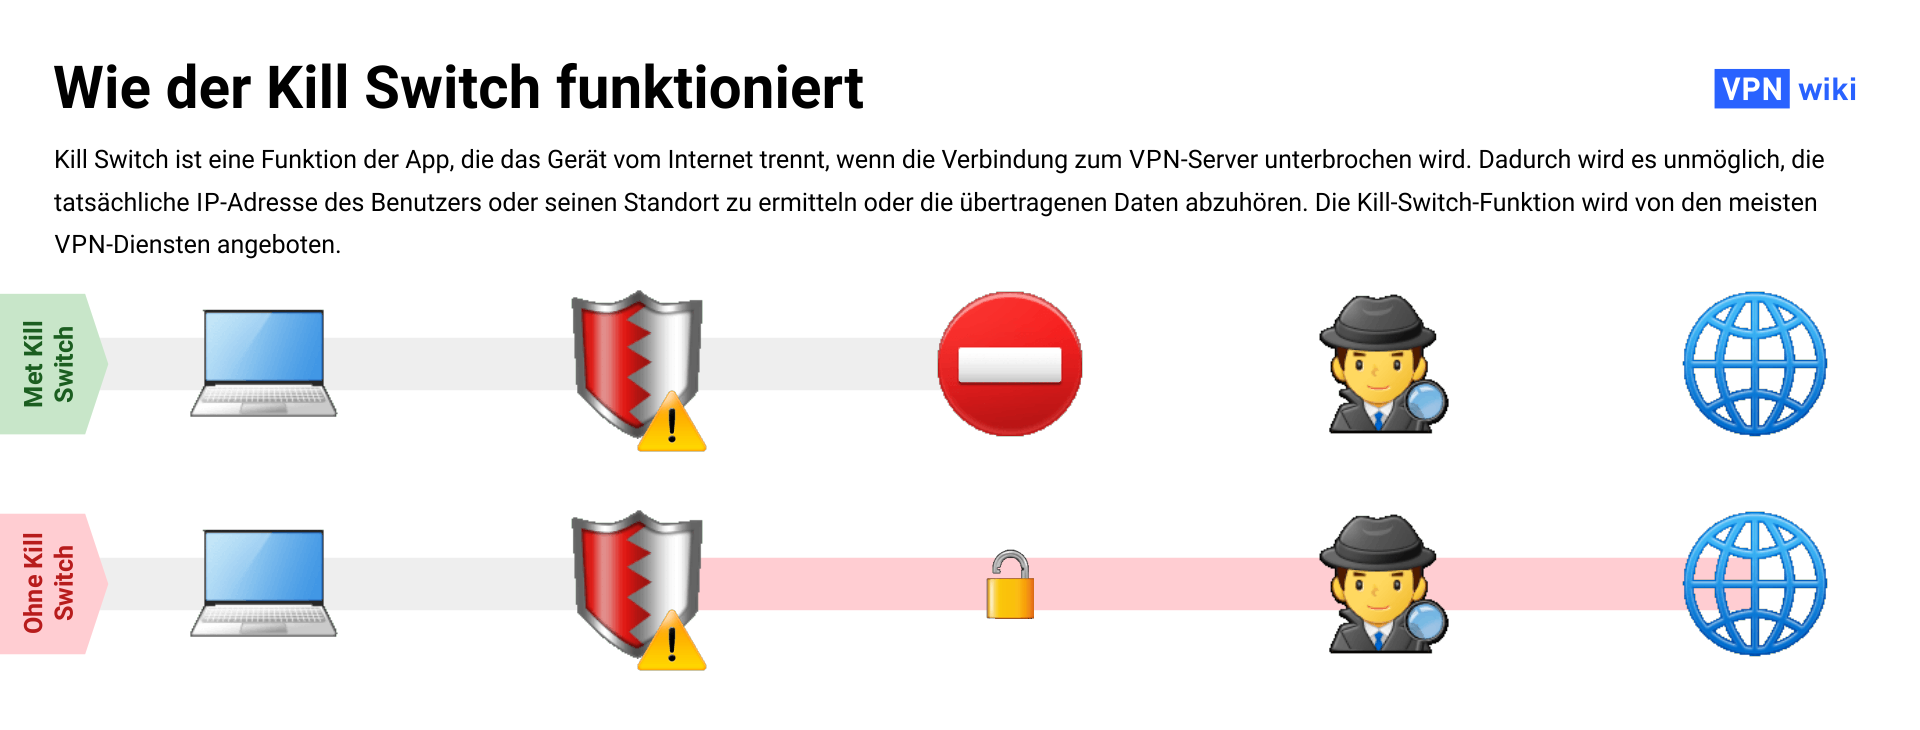 Was ist ein VPN Kill Switch und wie funktioniert er?